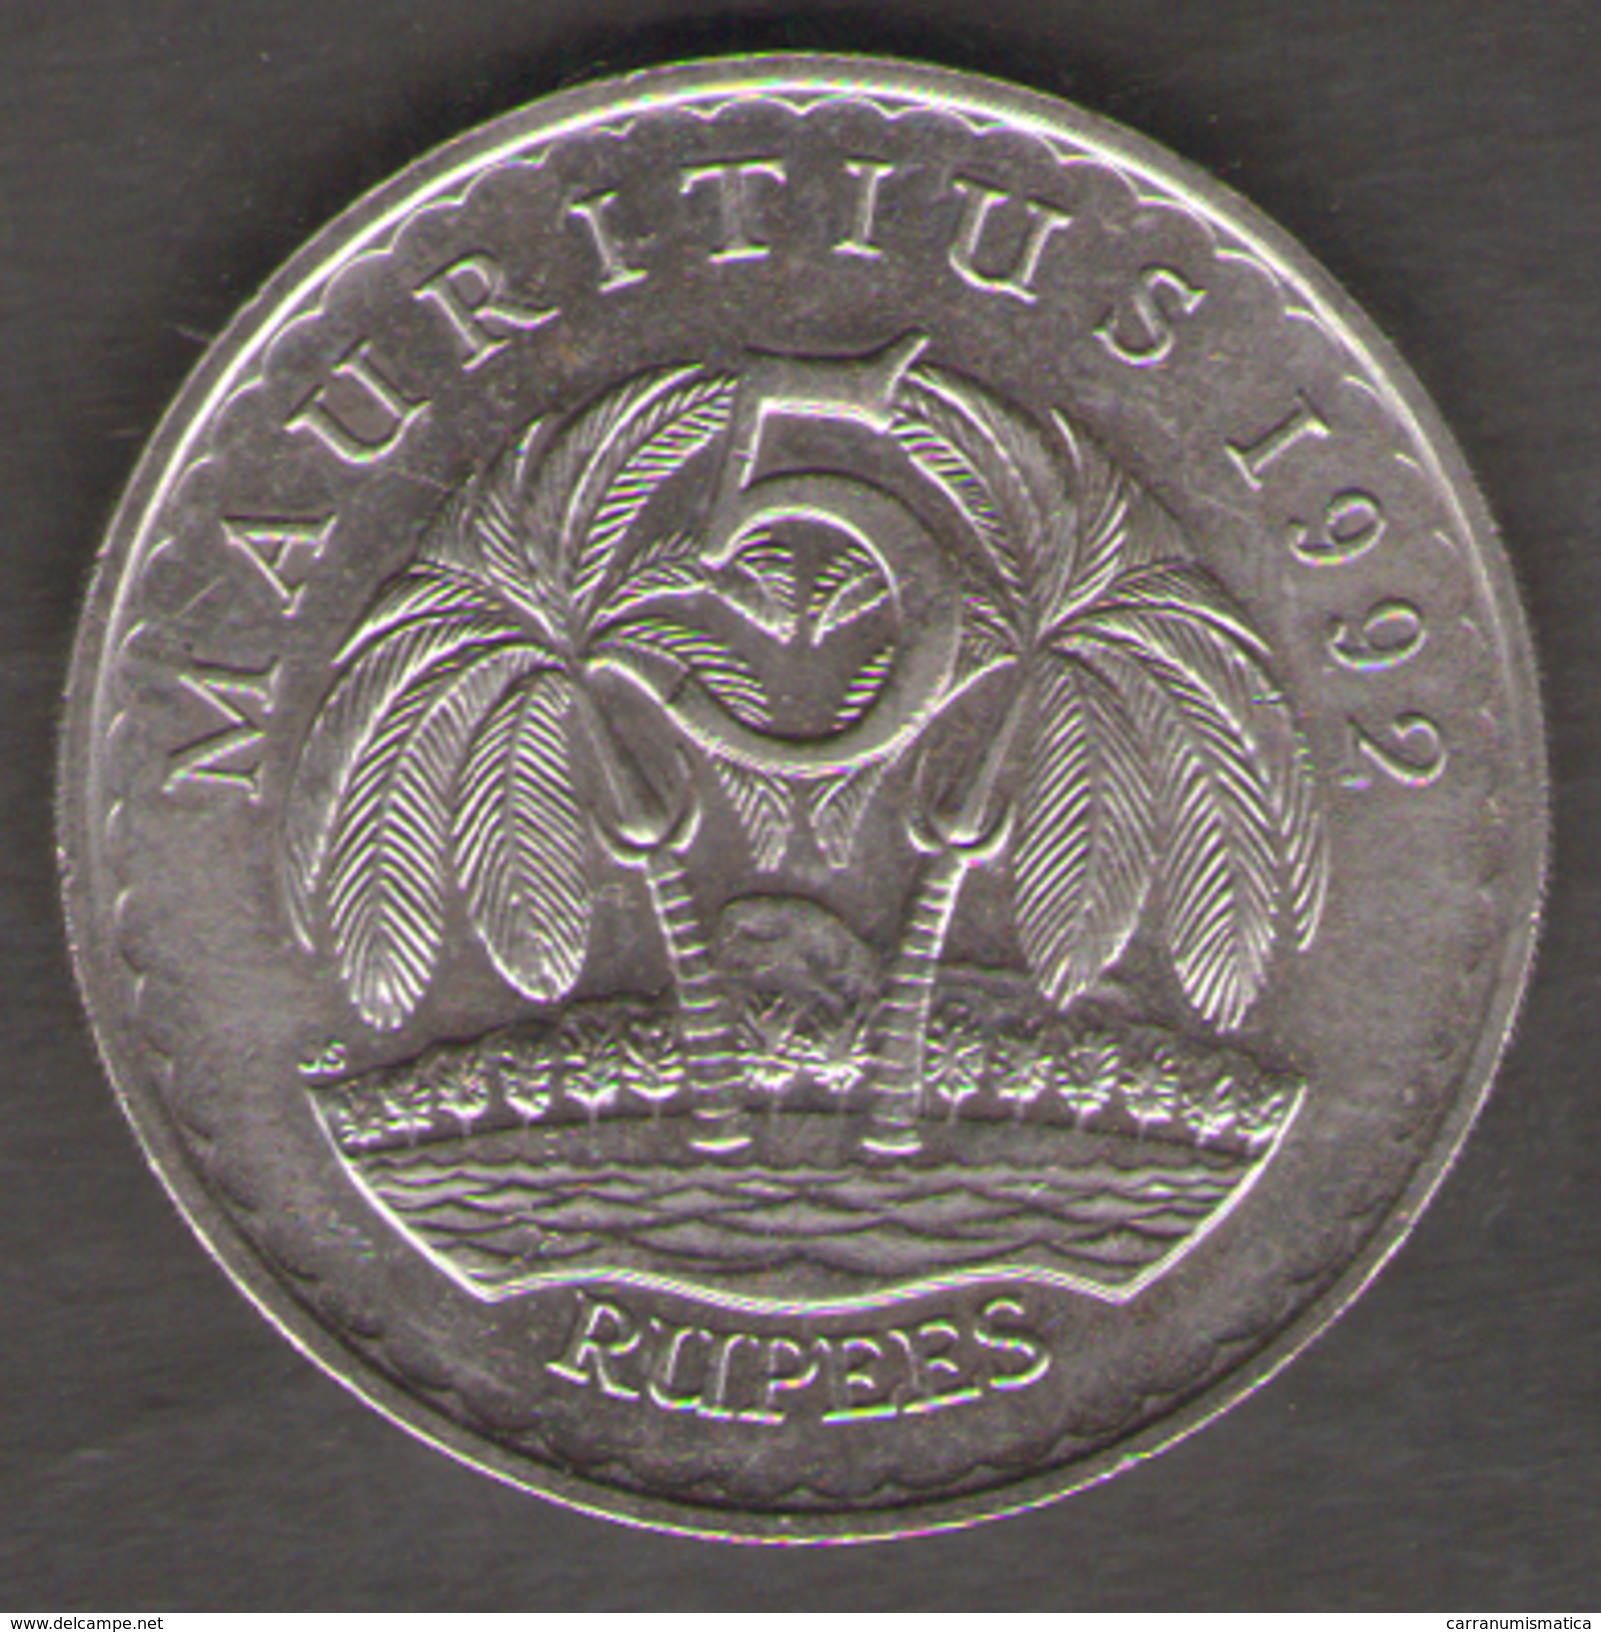 MAURITIUS 5 RUPEES 1992 - Mauritius